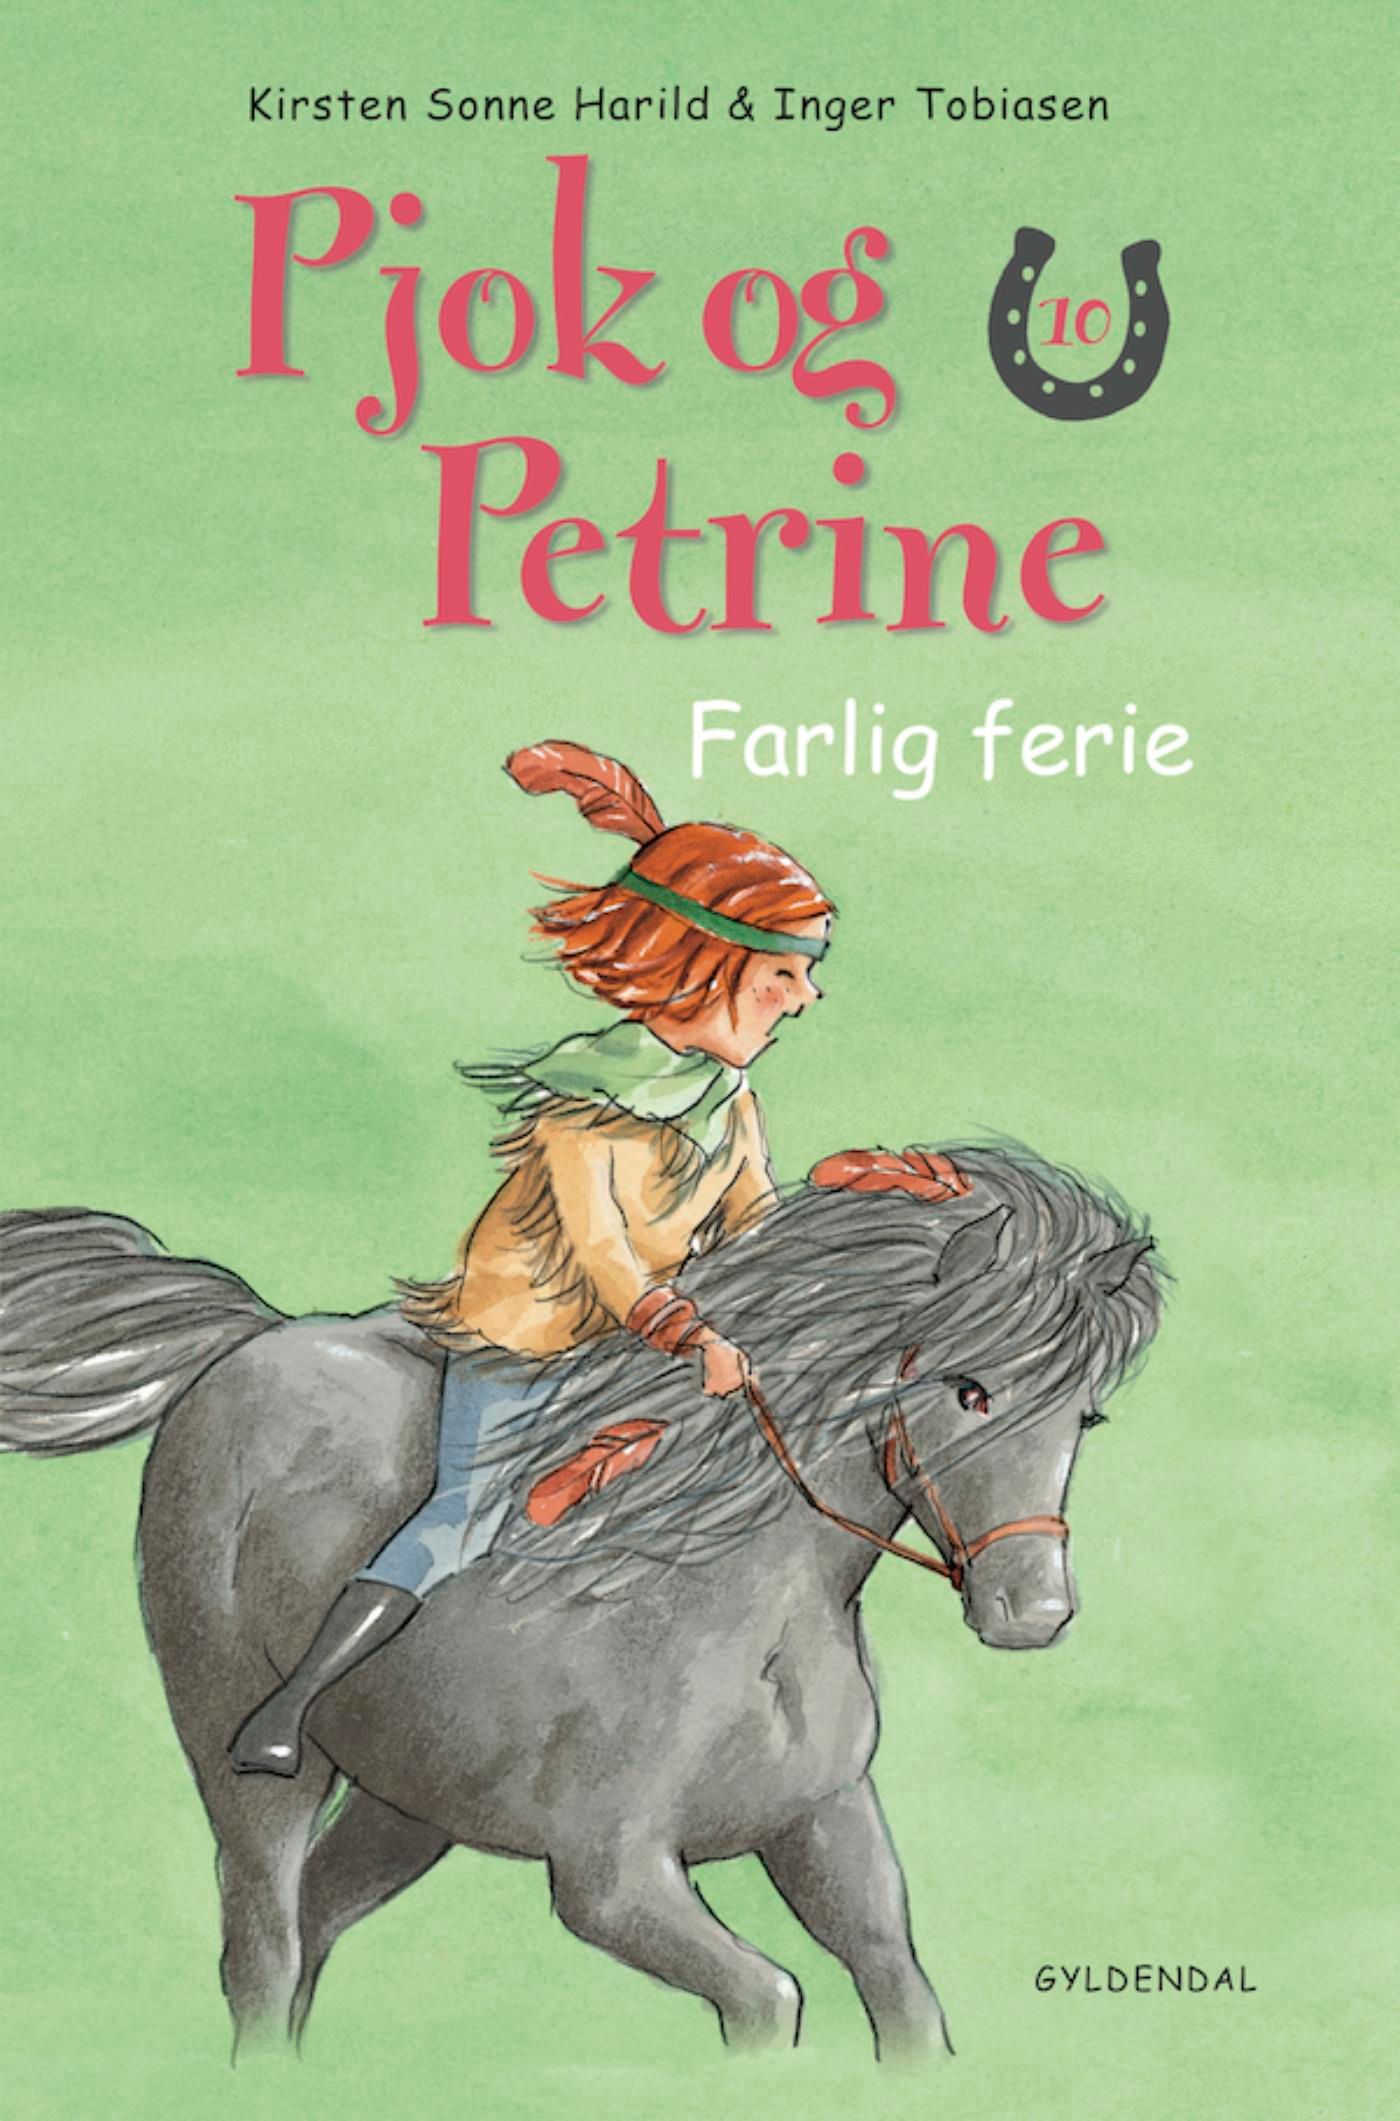 Pjok og Petrine - 10 Farlig ferie, e-bog af Kirsten Sonne Harild